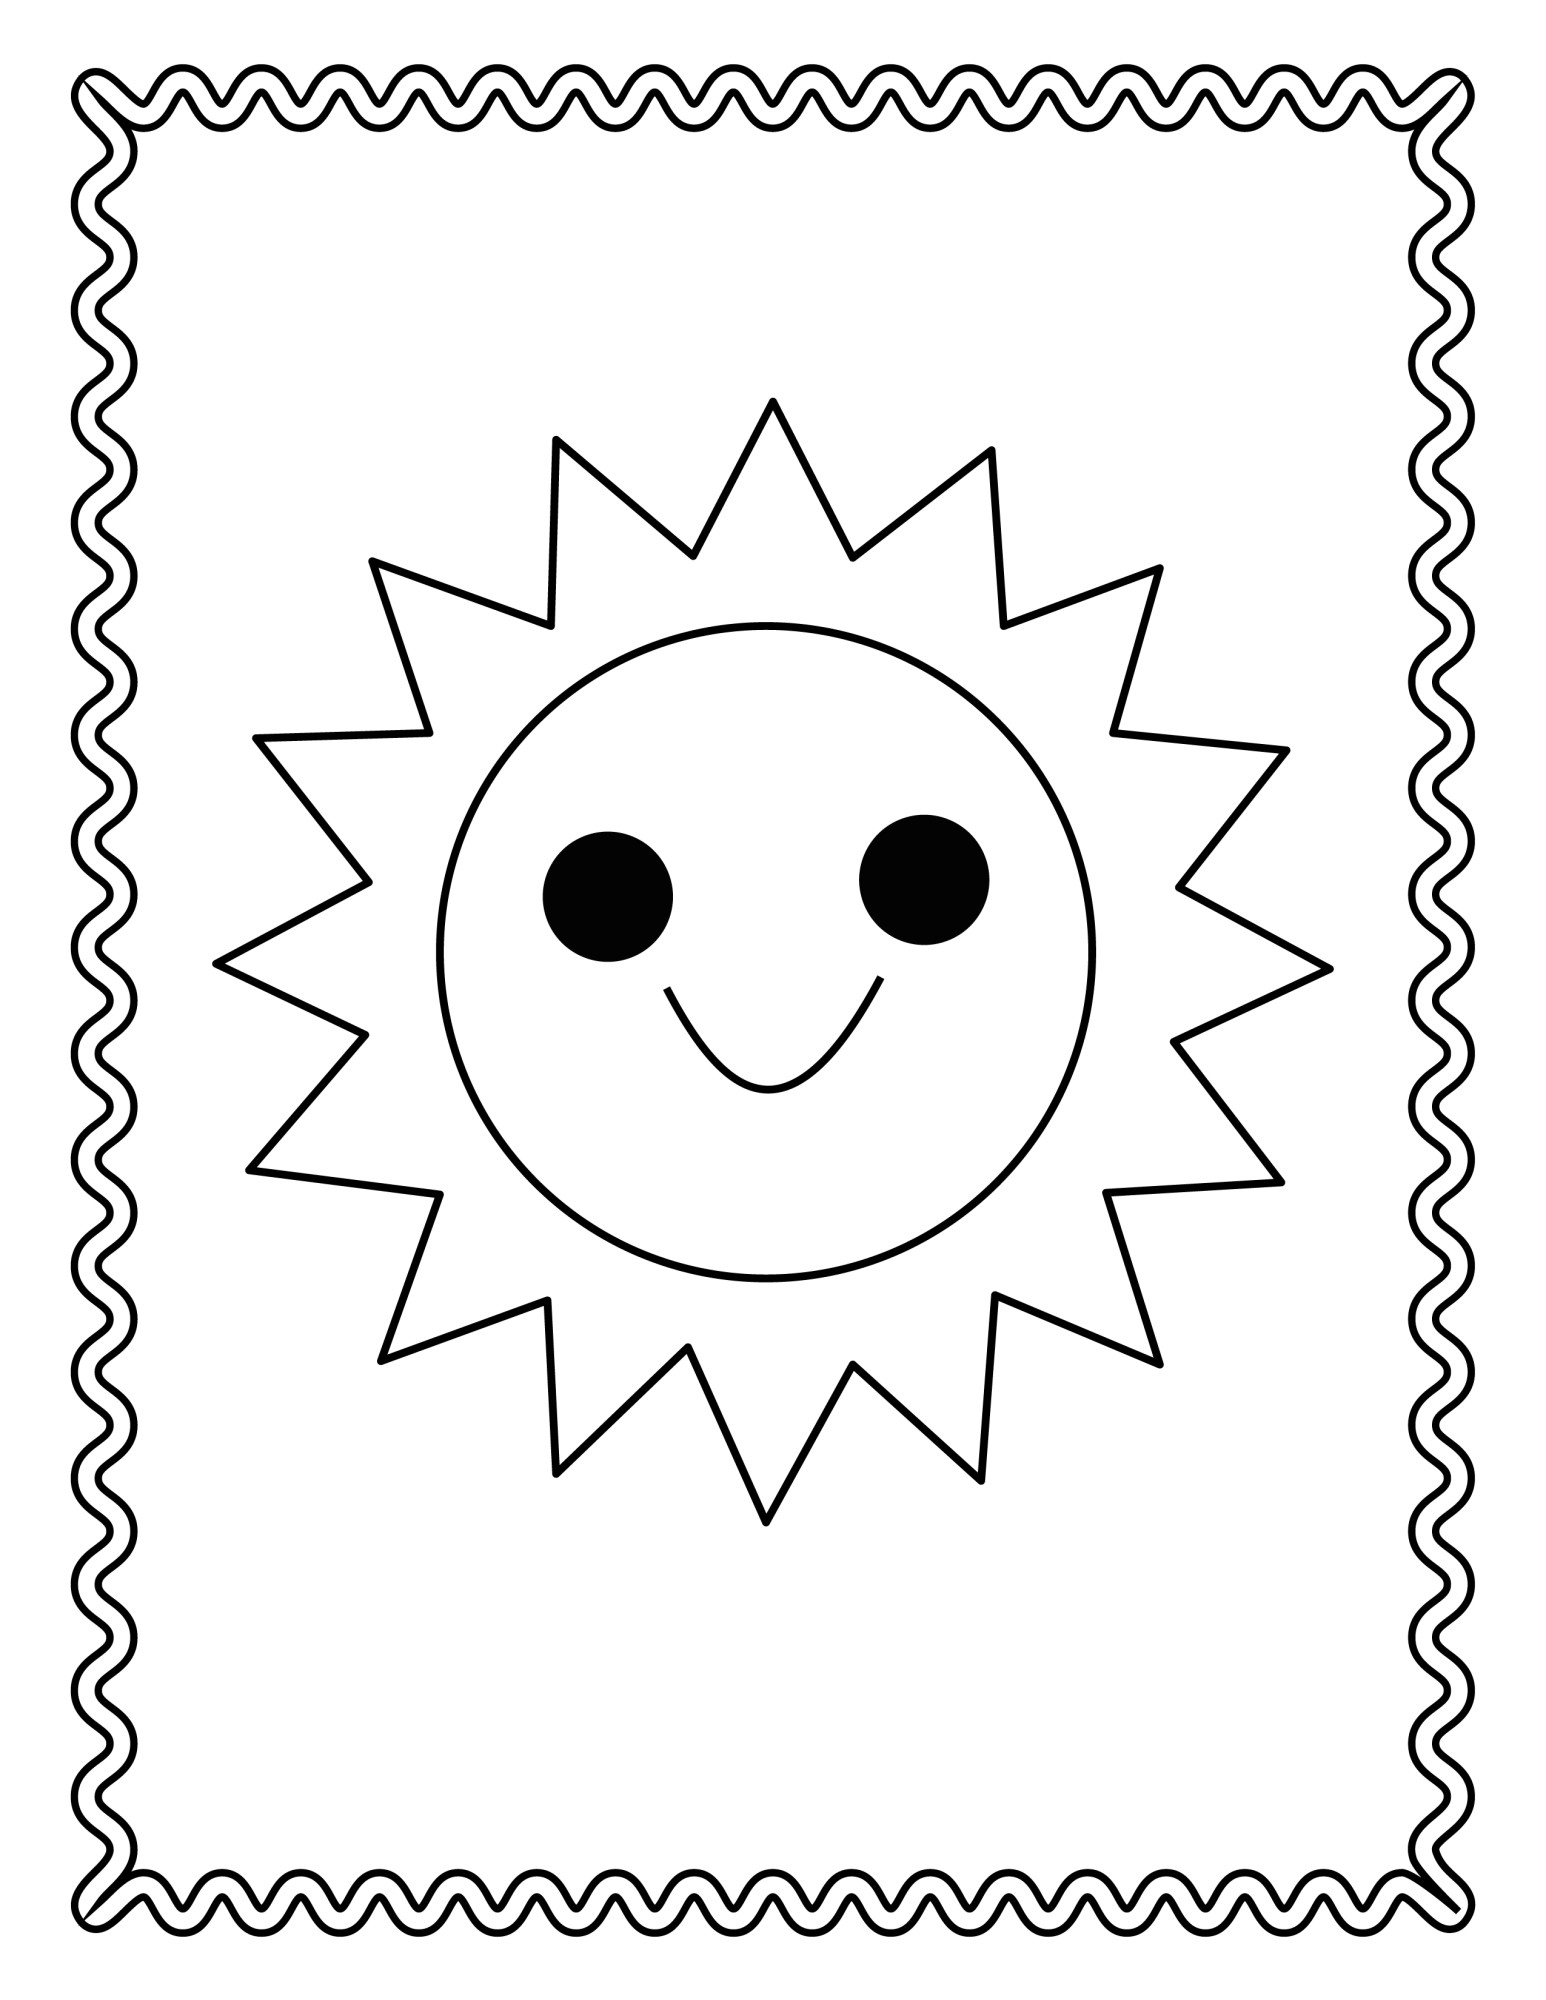 Раскраска для детей: смайлик солнце